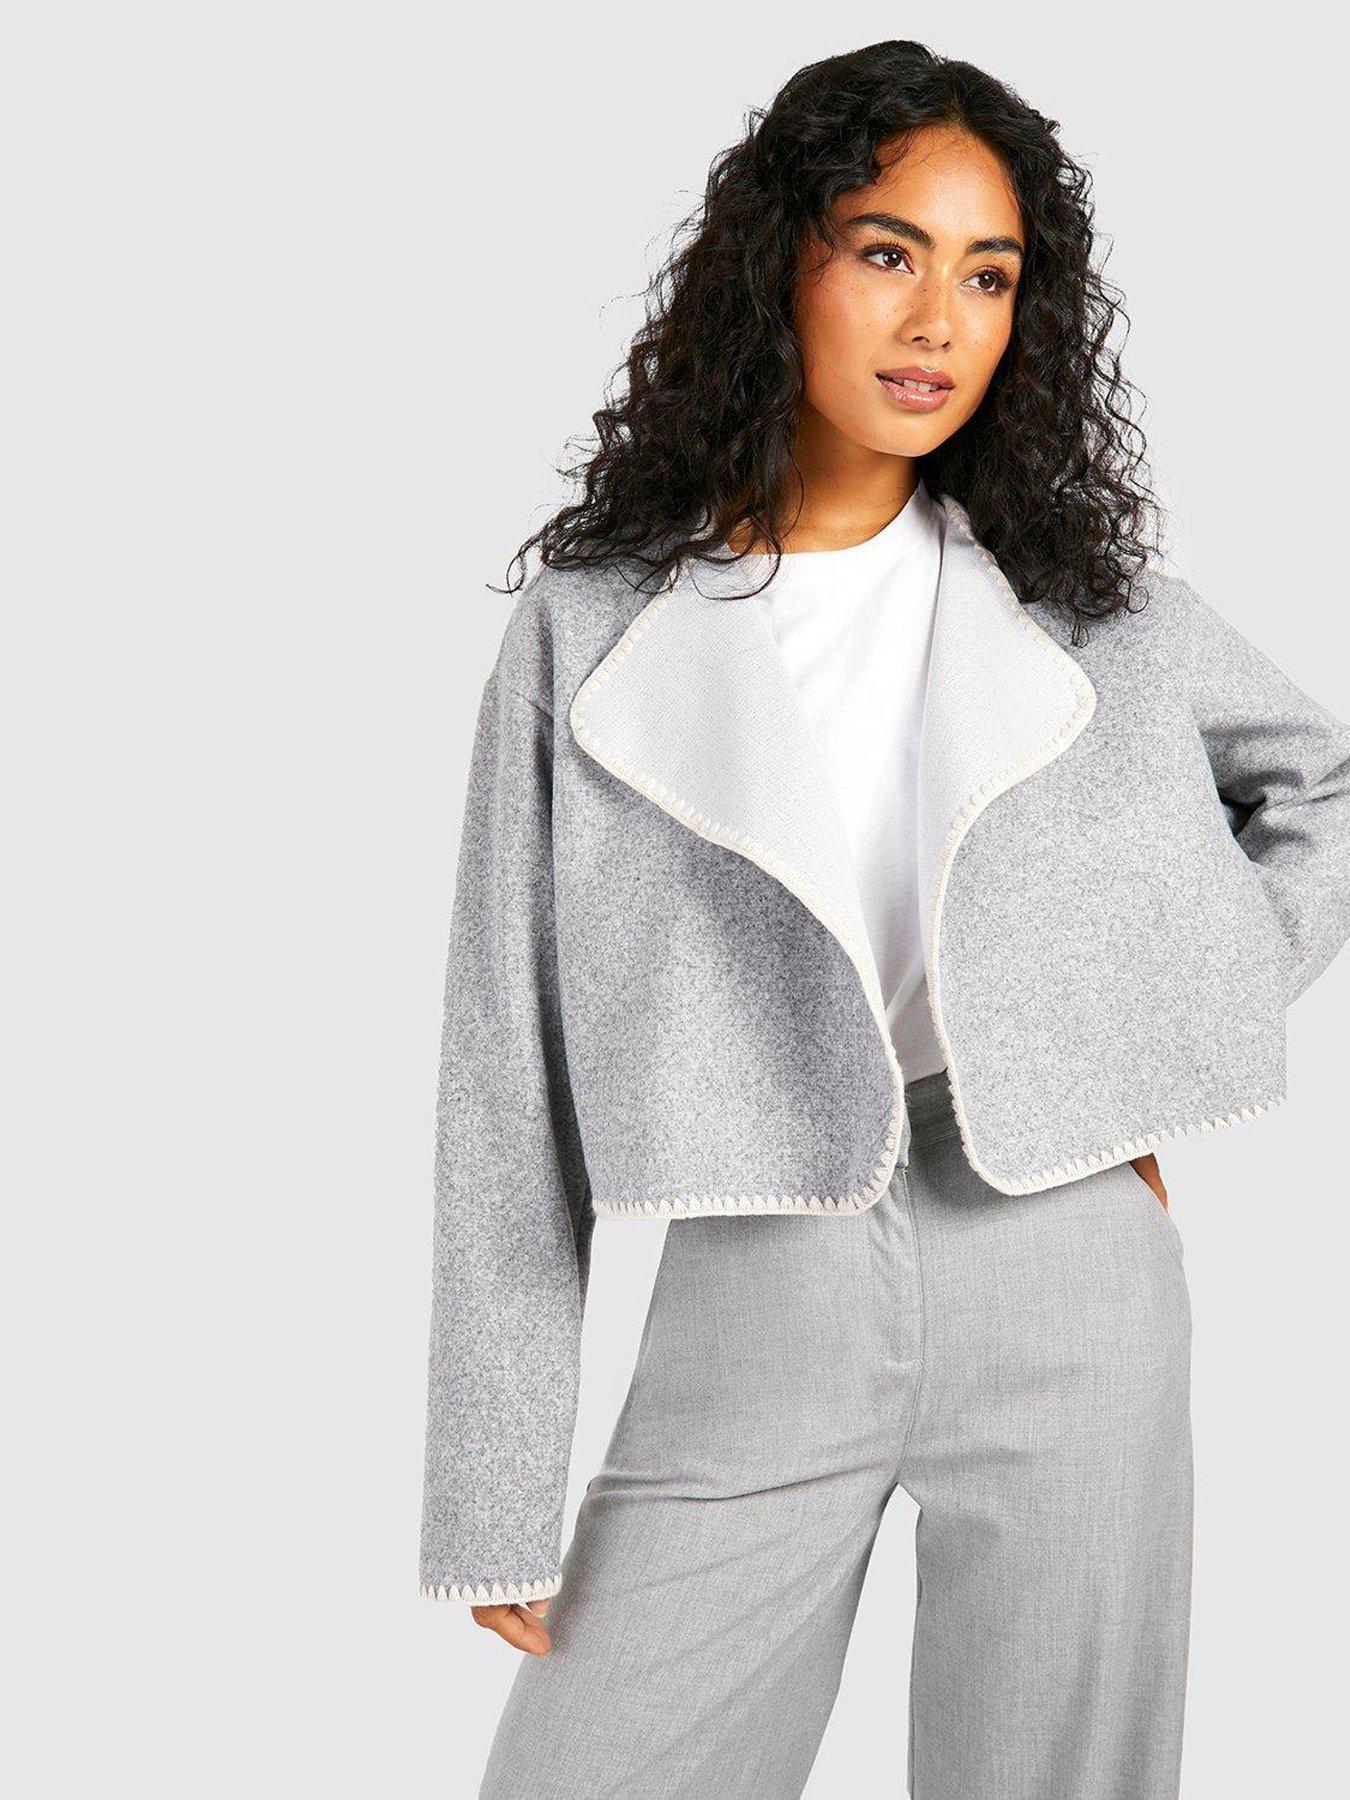 Blanket Coats & Capes, Coats & jackets, Women